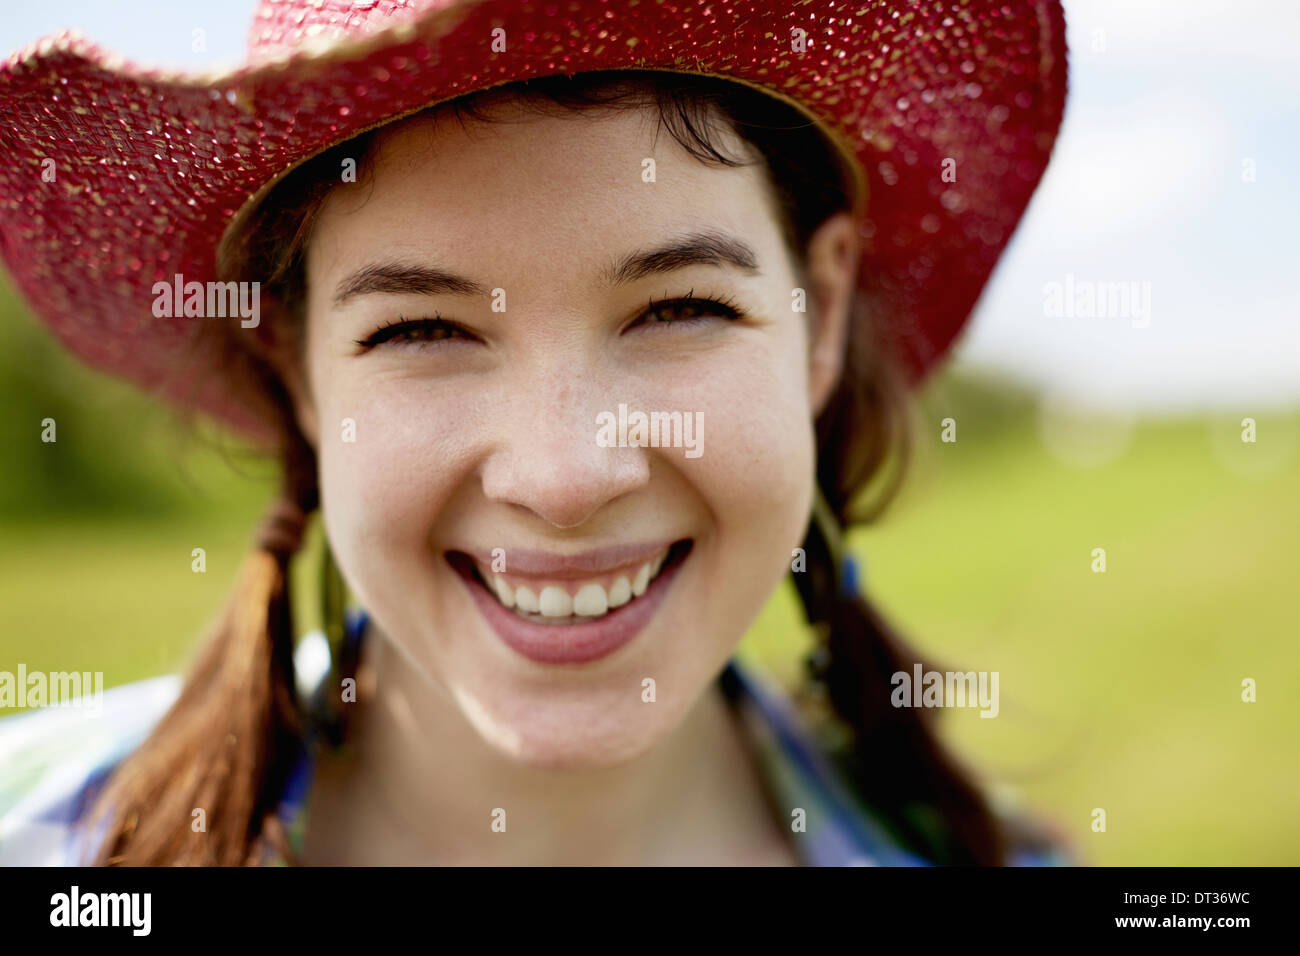 Eine junge Frau in einem rosa Strohhut lächelt breit Stockfoto